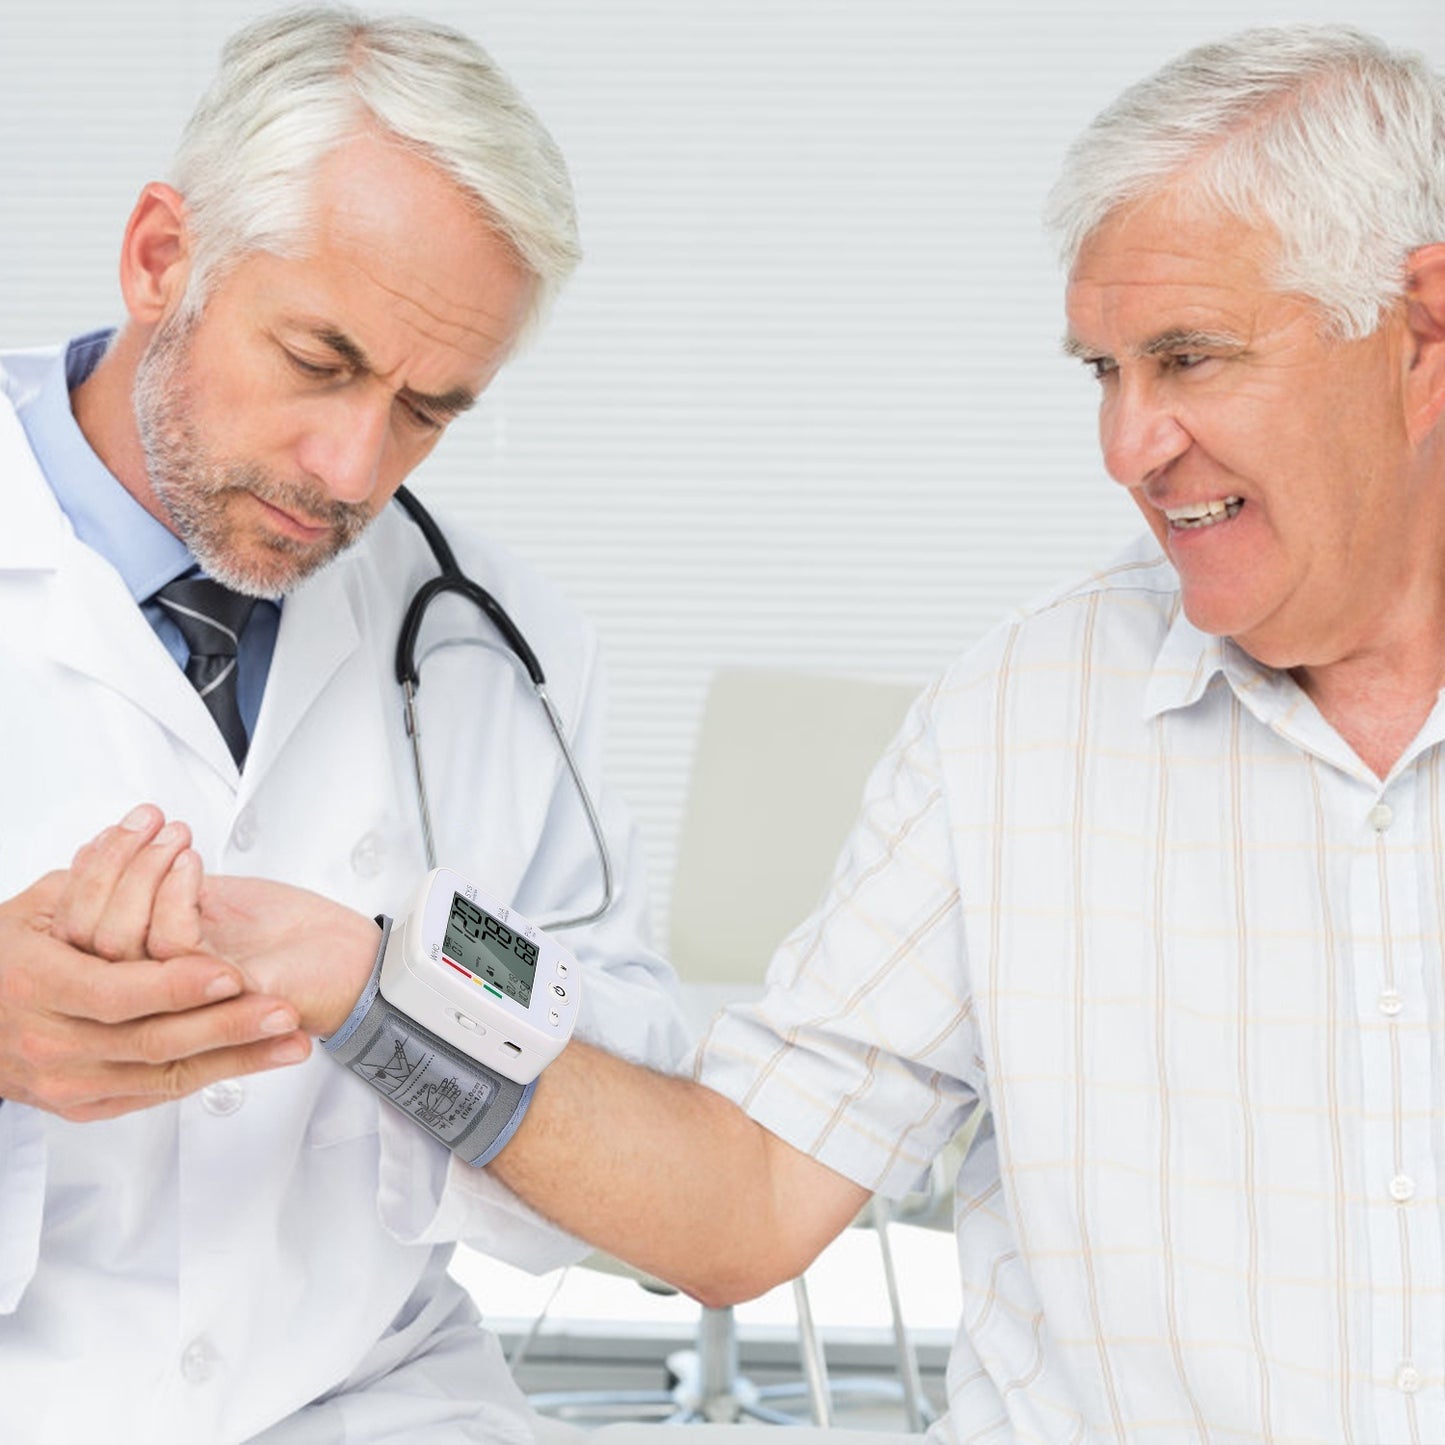 Blood Pressure Monitor Wrist Digital High Blood Pressure Cuff Heartbeat Tester